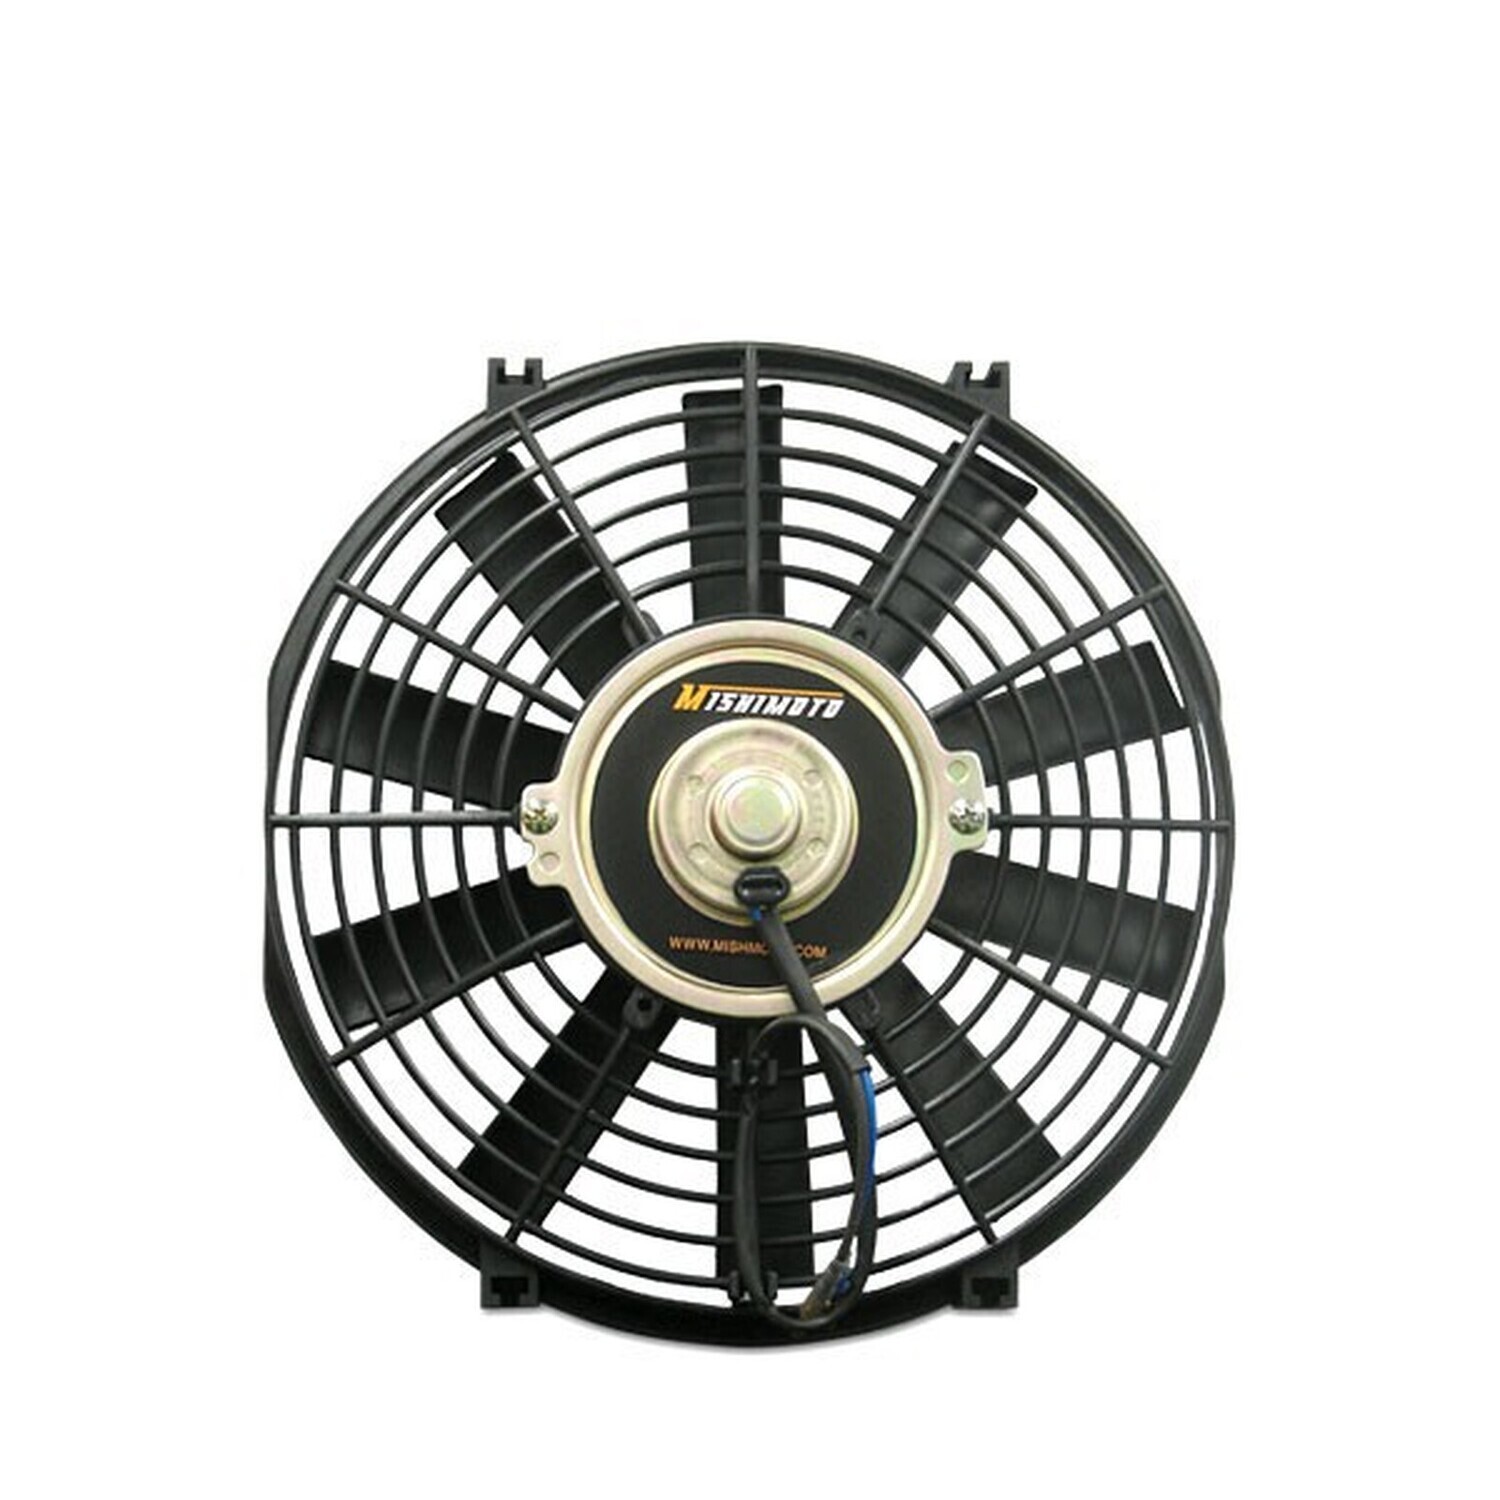 Mishimoto 12v cooling fan